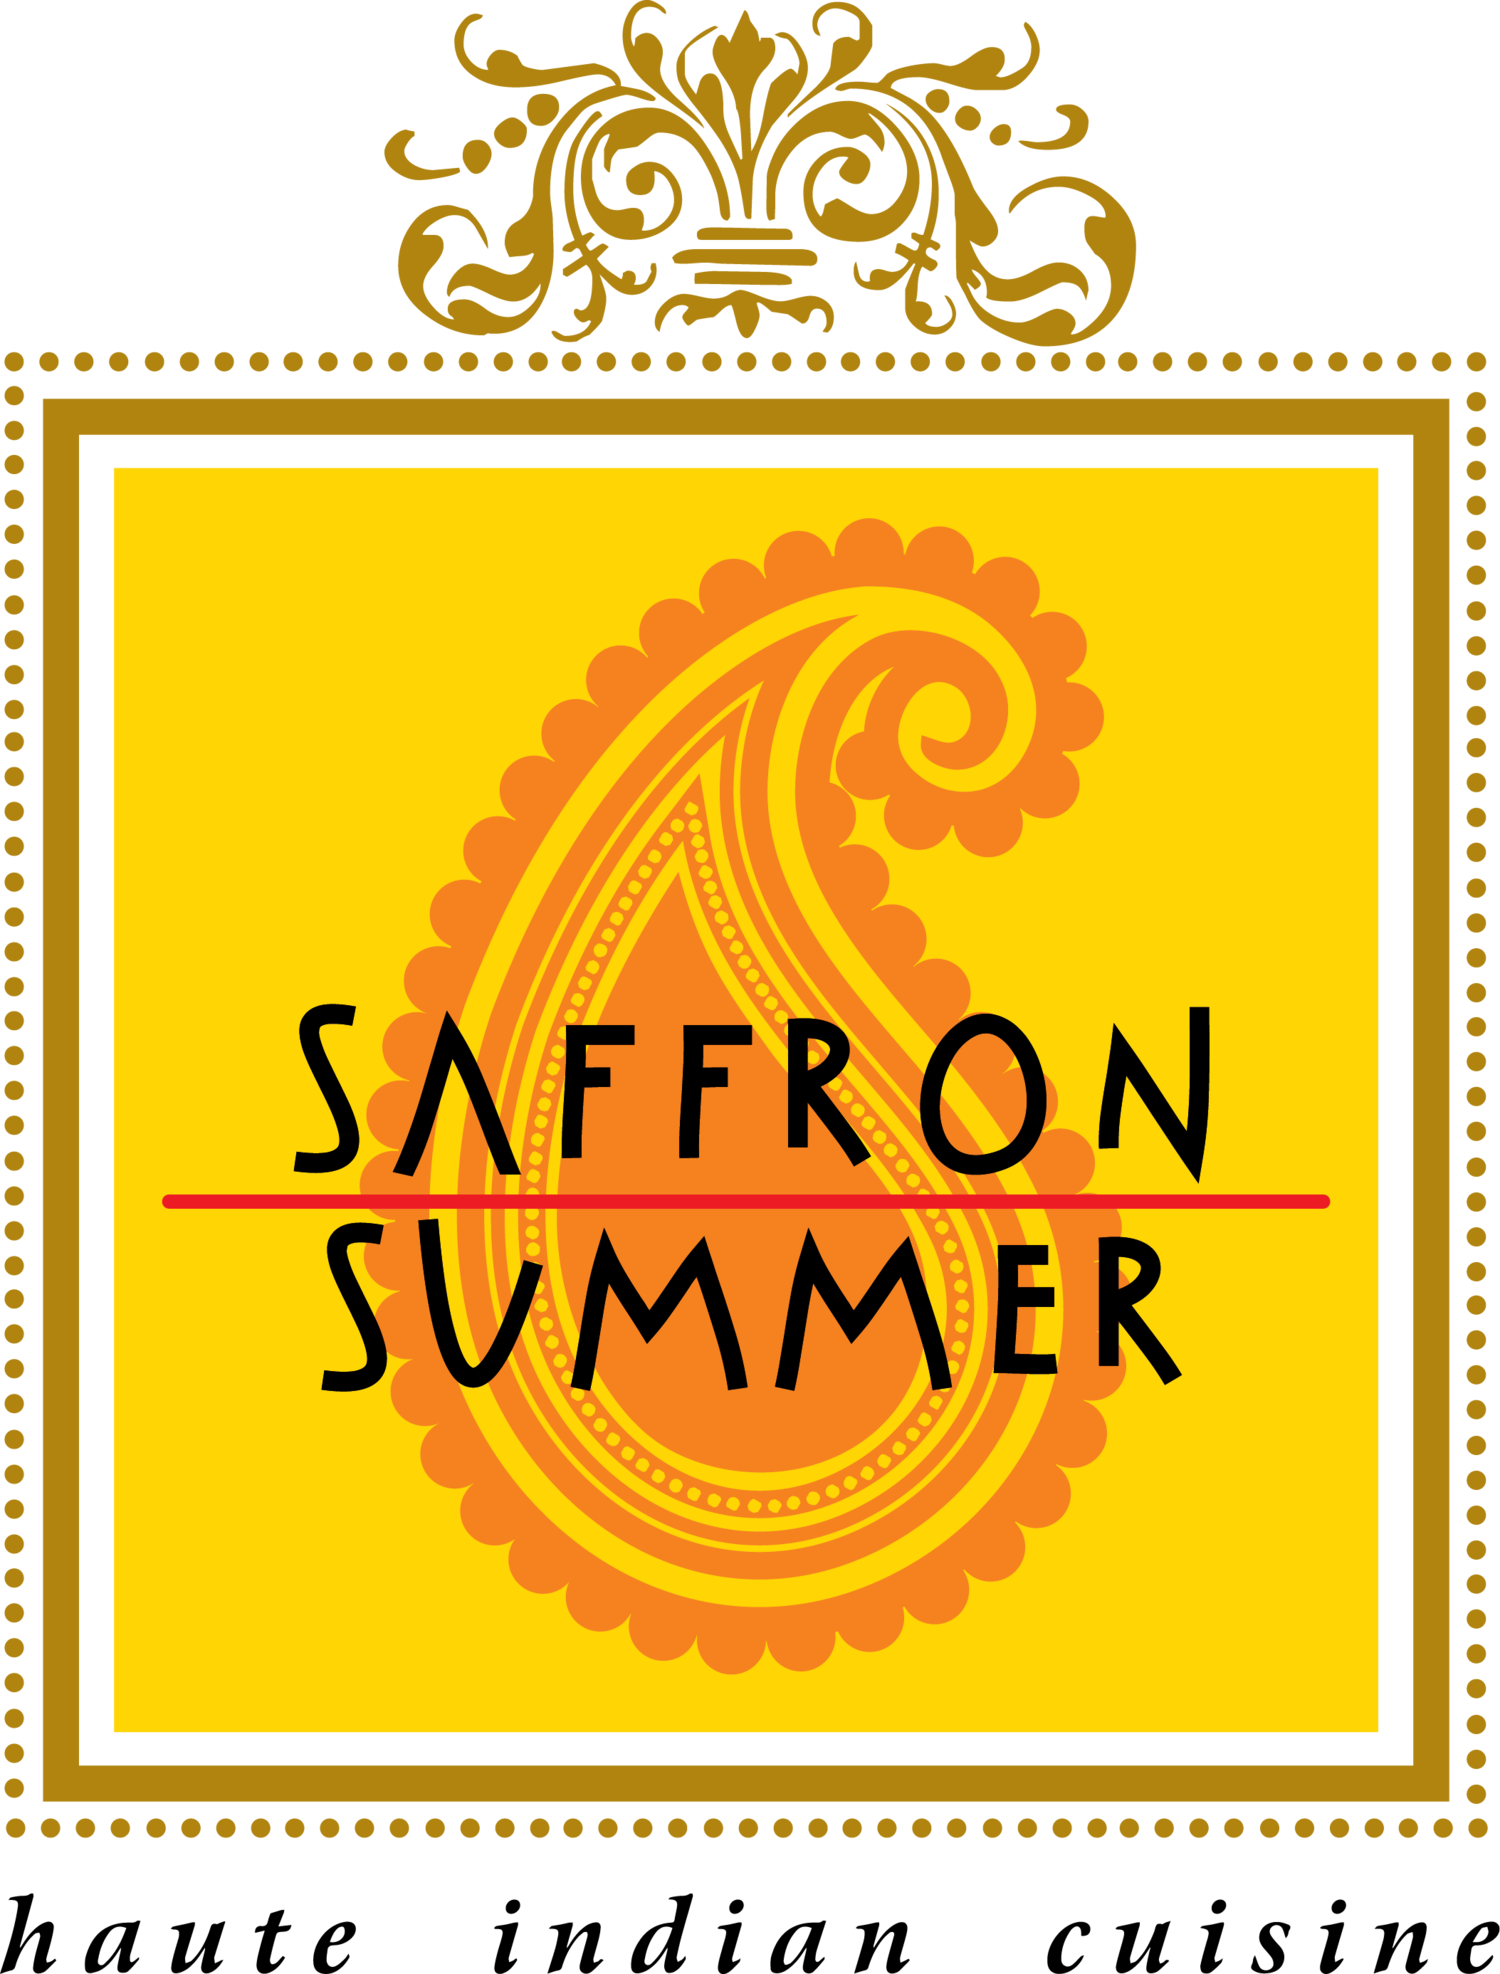 Saffron Summer